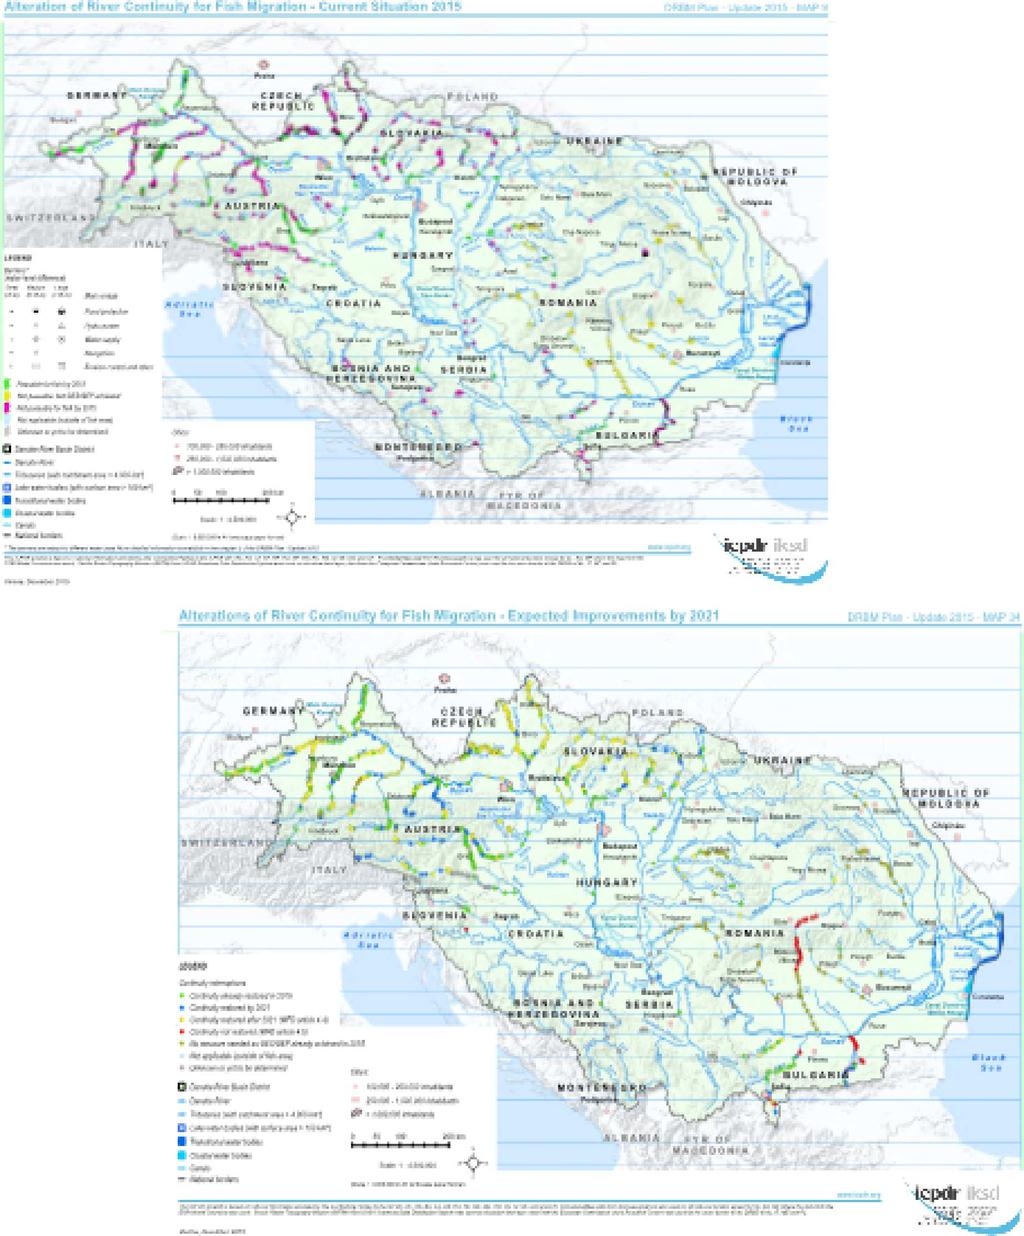 18.6.2018 C 213/17 Districtul bazinului hidrografic al Dunării: Întreruperea continuității râurilor și a habitatelor (sus) situația actuală în 2015 (harta 1); îmbunătățiri preconizate până în 2021